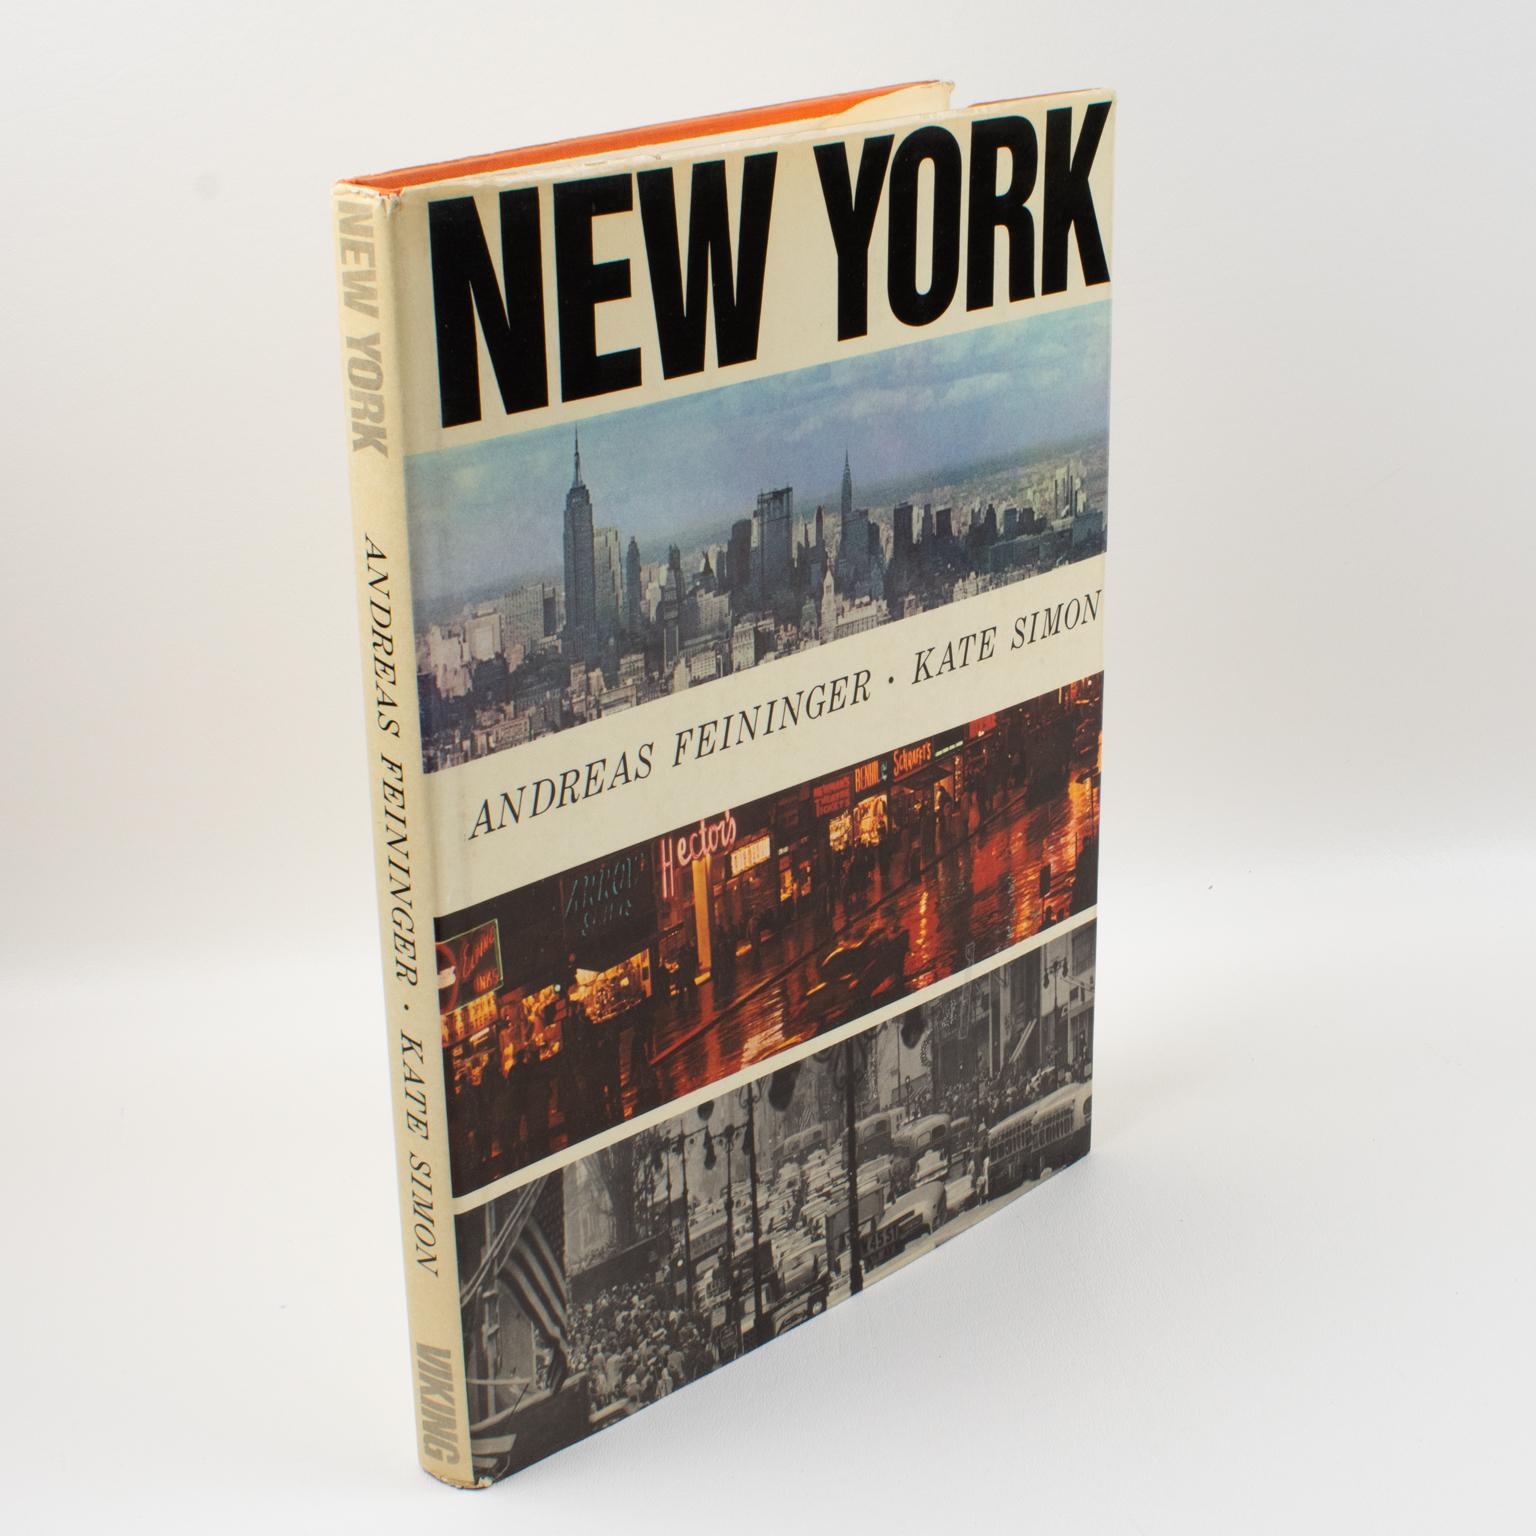 New York Photographs, Buch von Andreas Feininger, 1964.
Dies ist ein beeindruckendes fotografisches Dokument seiner Zeit: Ein Porträt von New York. Farb- und Schwarz-Weiß-Fotoreproduktionen von Andreas Feininger (1906-1999), einem amerikanischen